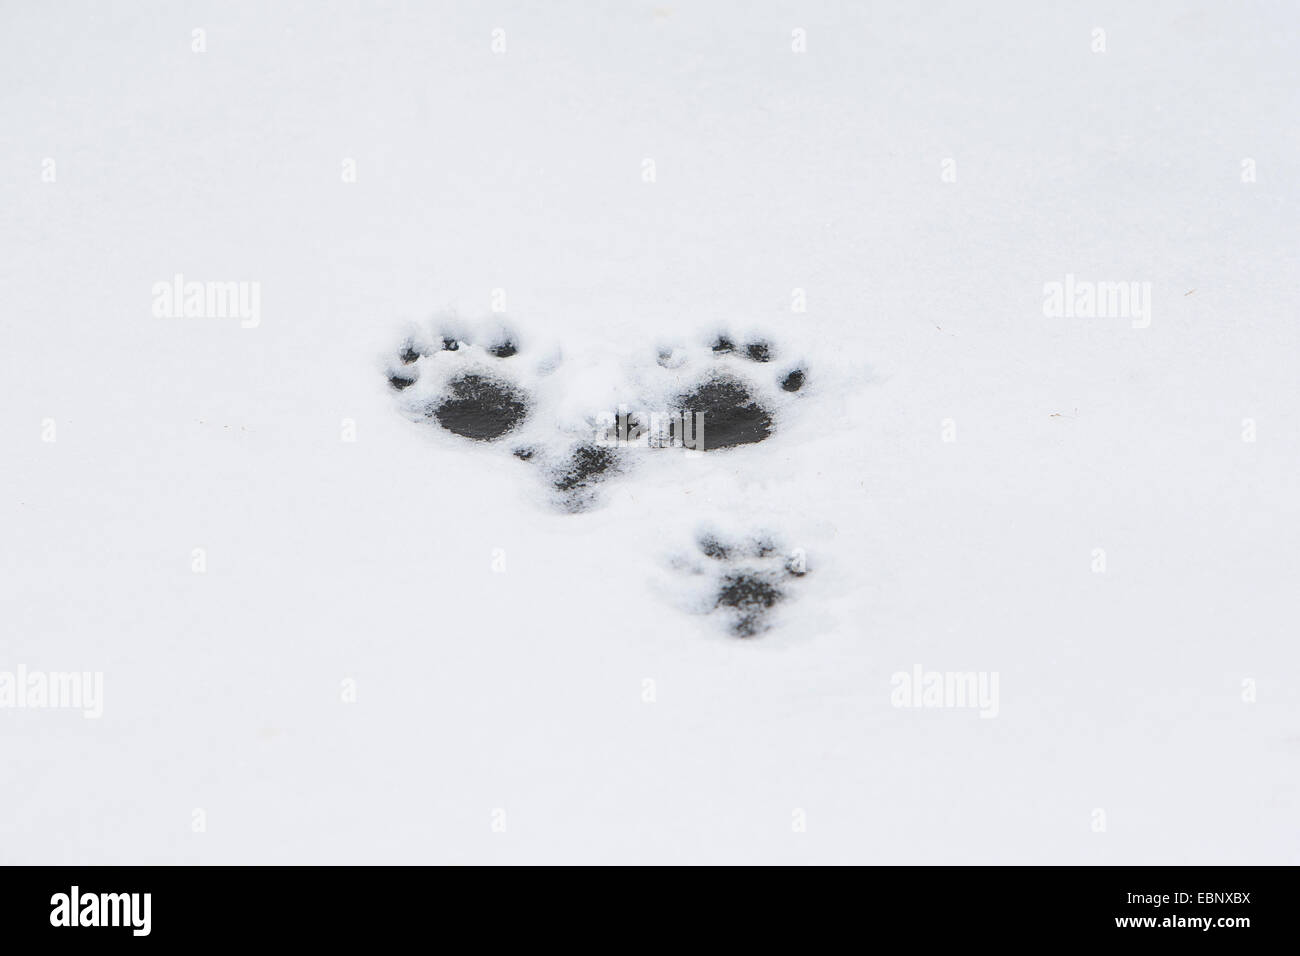 Unione Lontra di fiume, Lontra europea, lontra (Lutra lutra), le tracce di una lontra di fiume nella neve e nel ghiaccio, Germania Foto Stock